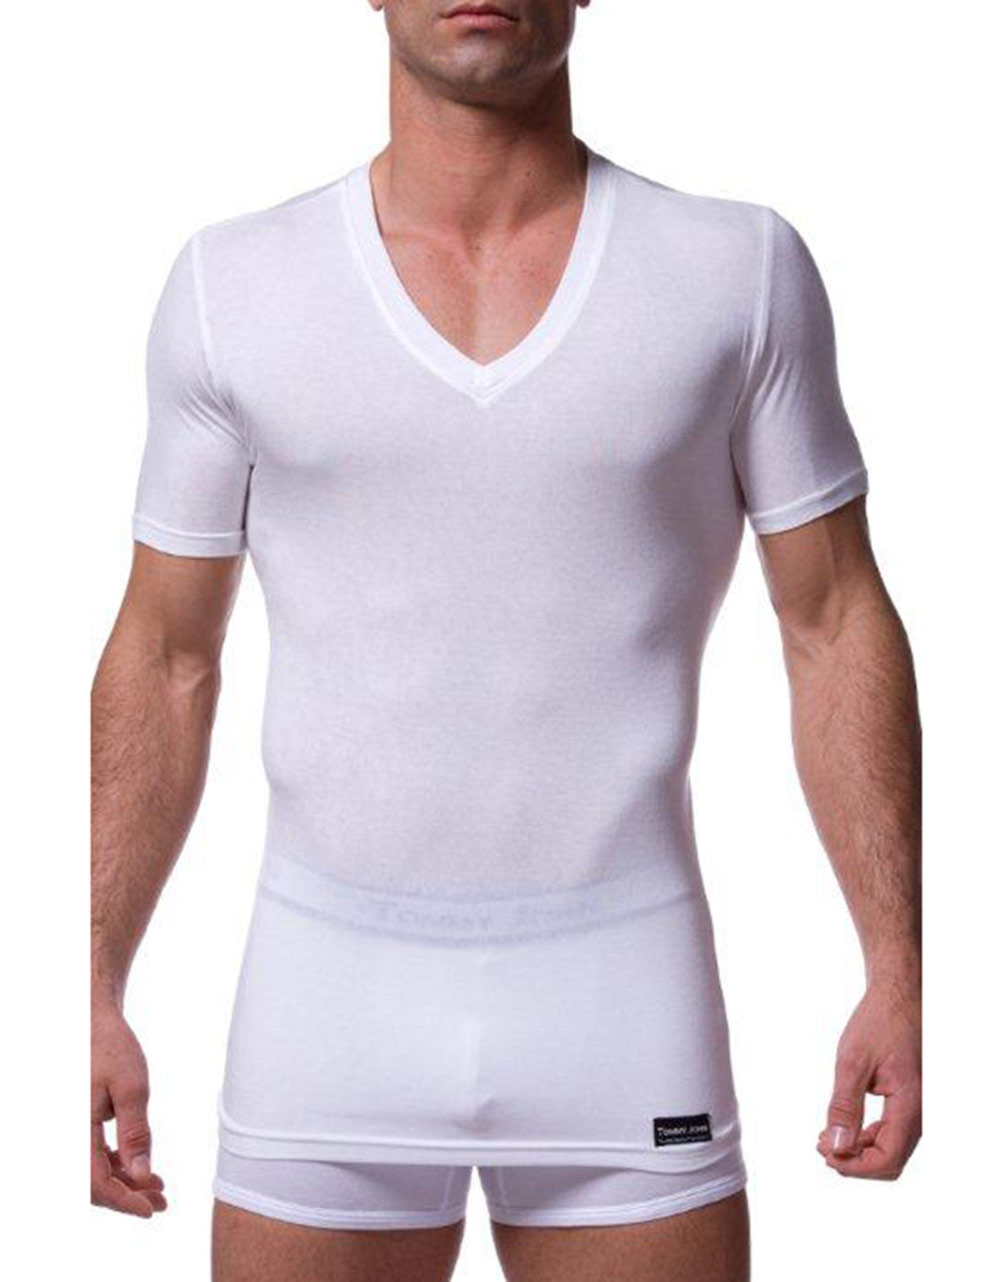 Tommy John 'second Skin' Deep V-neck Undershirt in White for Men - Lyst